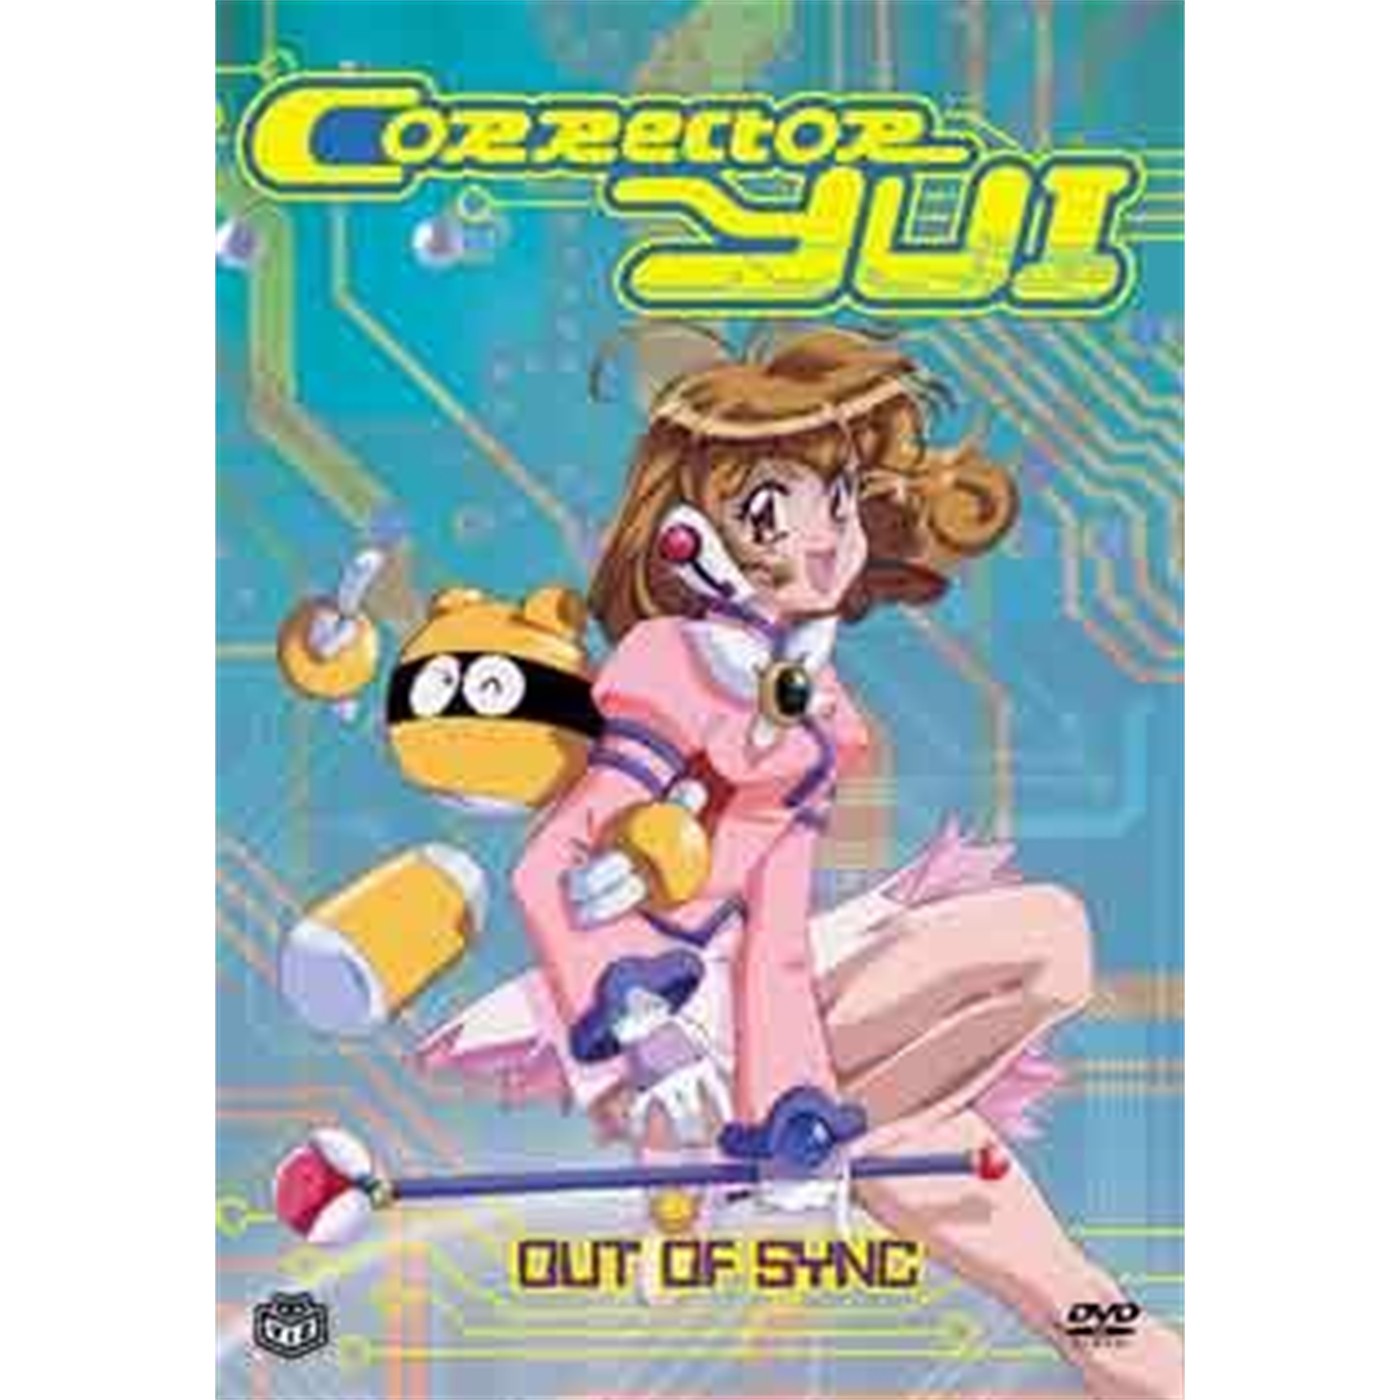 Corrector Yui, DVD Vol. 3